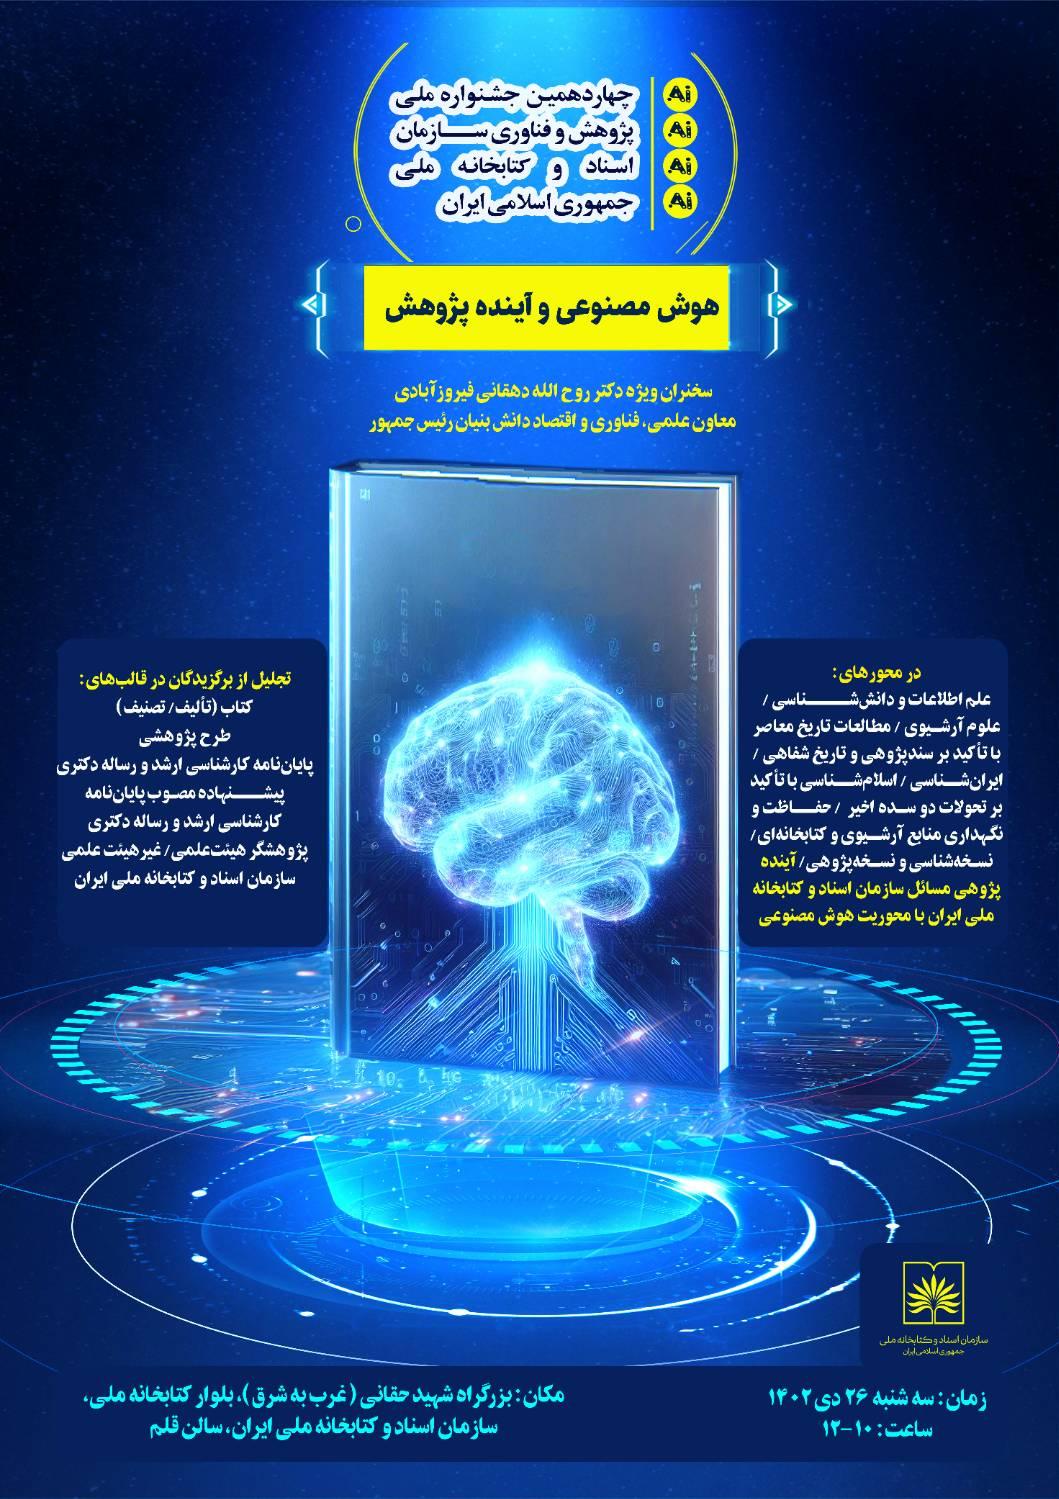 مراسم اختتامیه چهاردهمین جشنواره ملّی پژوهش و فناوری سازمان اسناد و کتابخانه ملّی ایران برگزار می شود